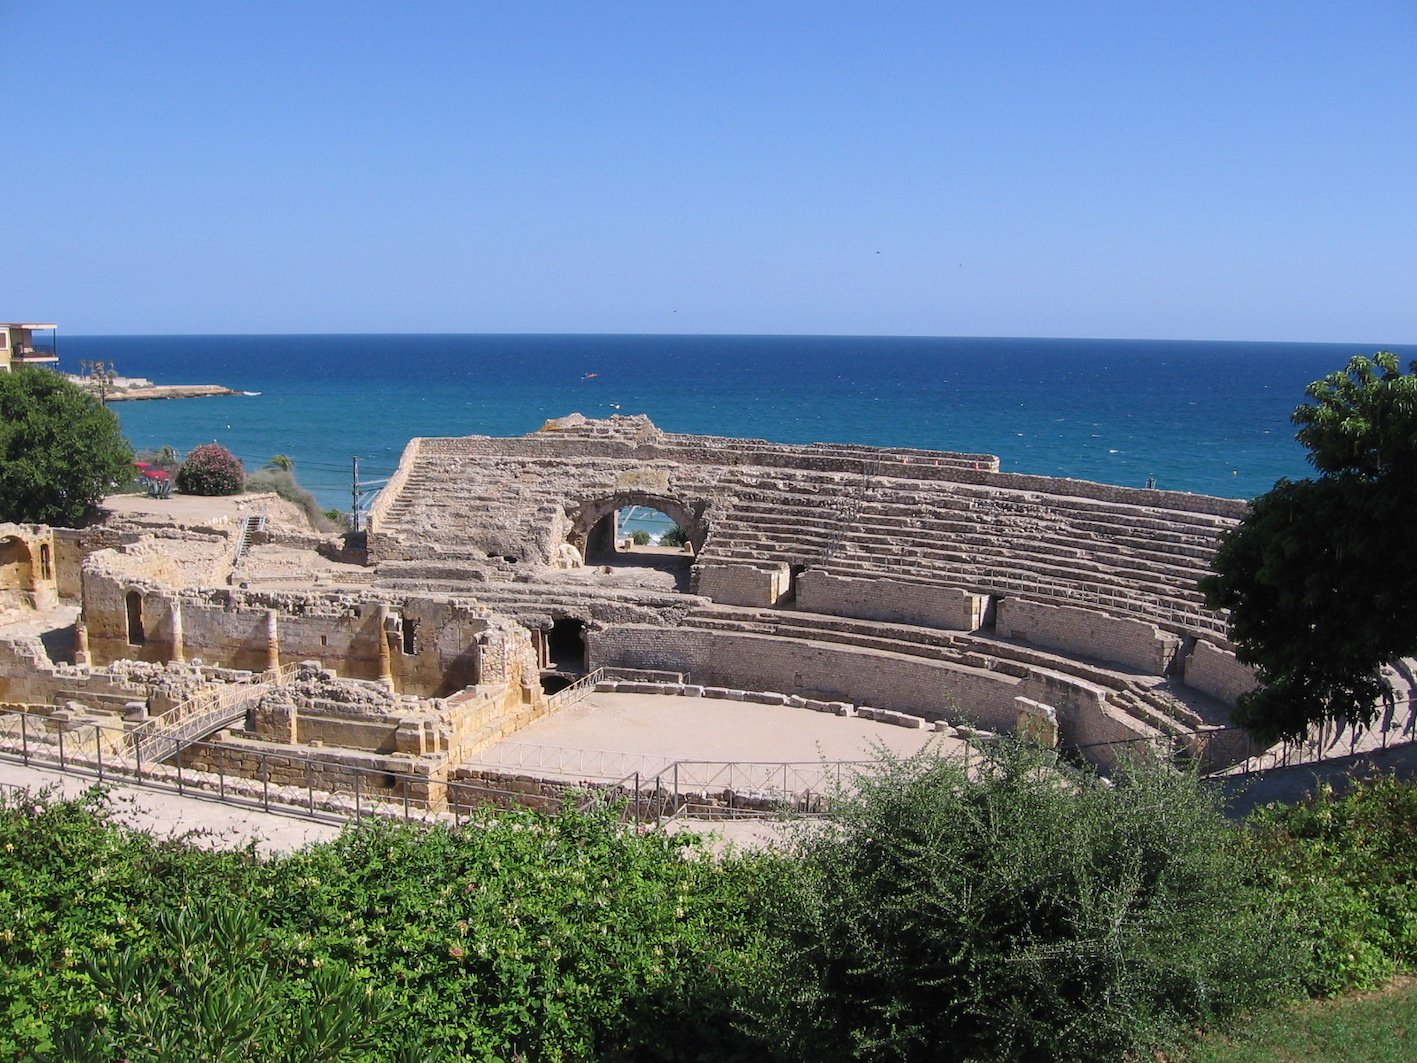 Cintxa, Amphithéâtre romain de Tarragone datant du IIème siècle, construit sous le règne de Hadrien - fonte Wikipedia CC BY-SA 3.0